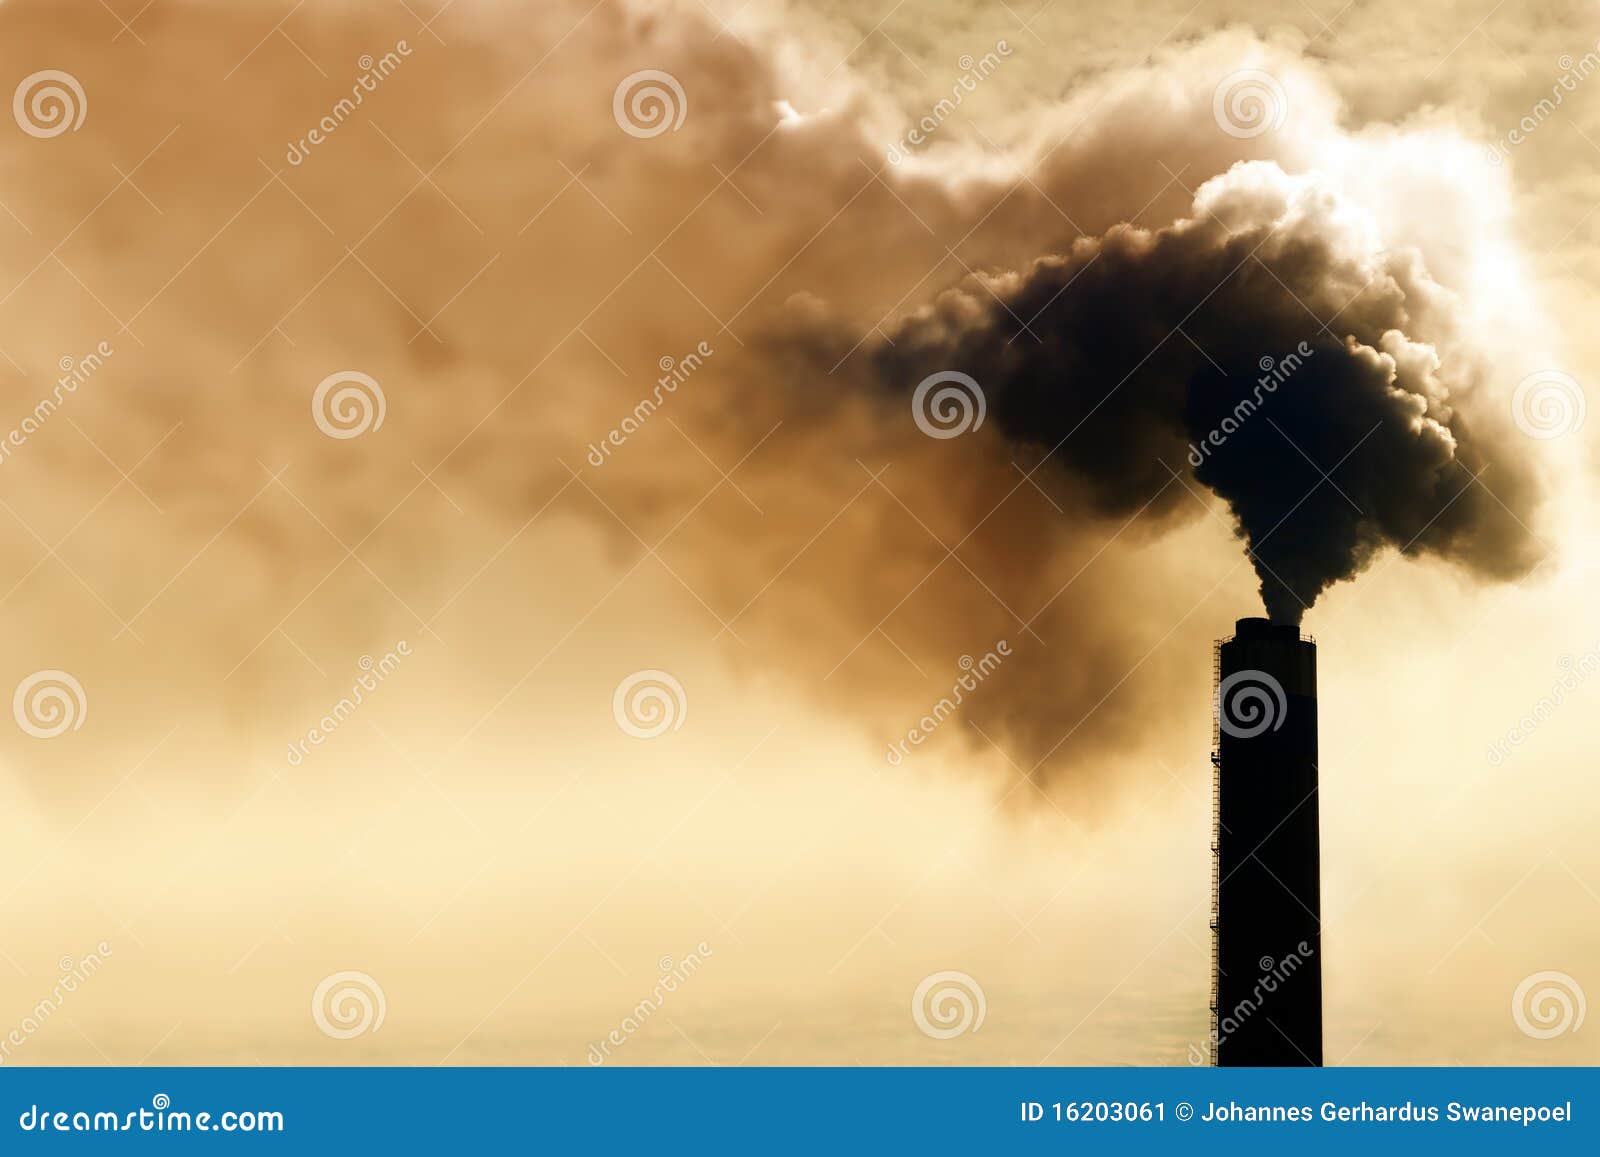 Inquinamento industriale. Fumo pesante dal camino industriale che inquina l'ambiente